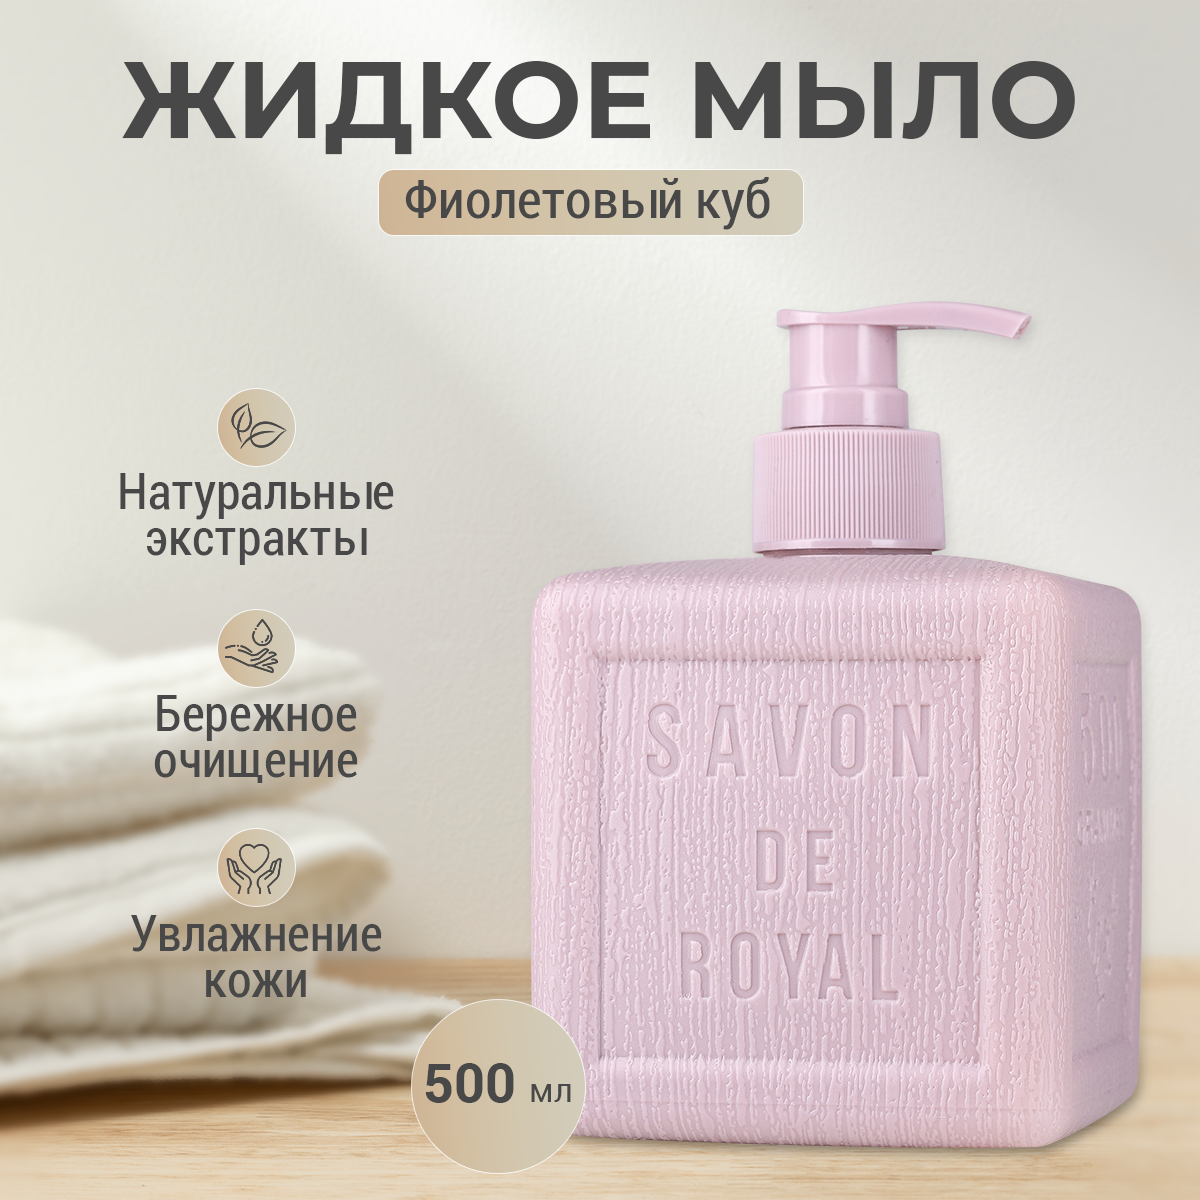 Увлажняющее жидкое мыло Savon de royal Фиолетовый с дозатором 500 мл люксовое жидкое мыло для рук звездная пыль серия классическое savon de luxe 500 мл